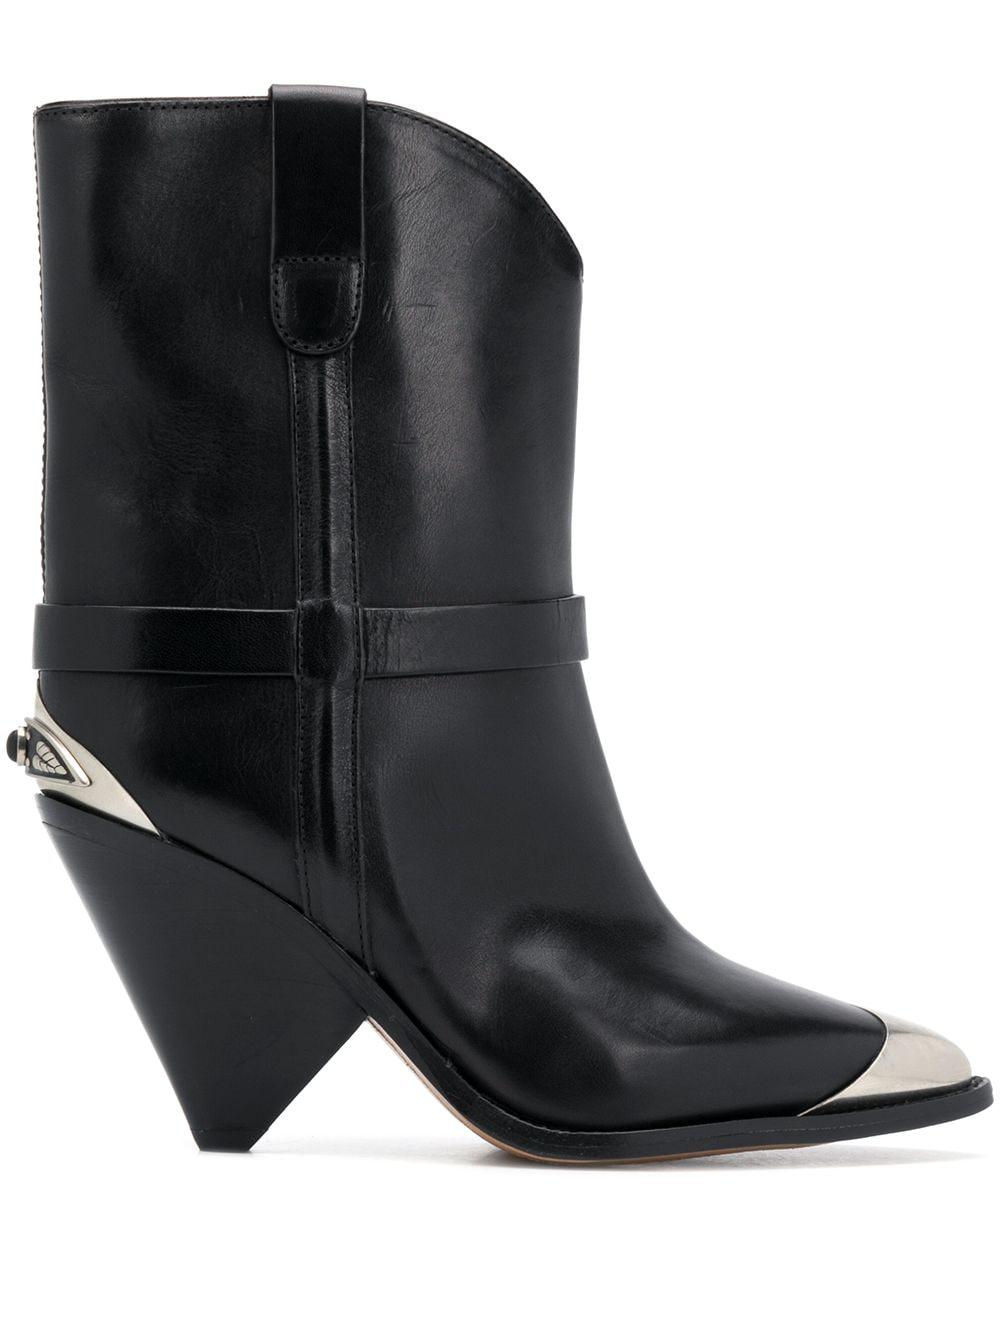 Troubled bruser træk uld over øjnene Isabel Marant Leather Lamsy Metal-insert Boots in Black - Save 52% - Lyst